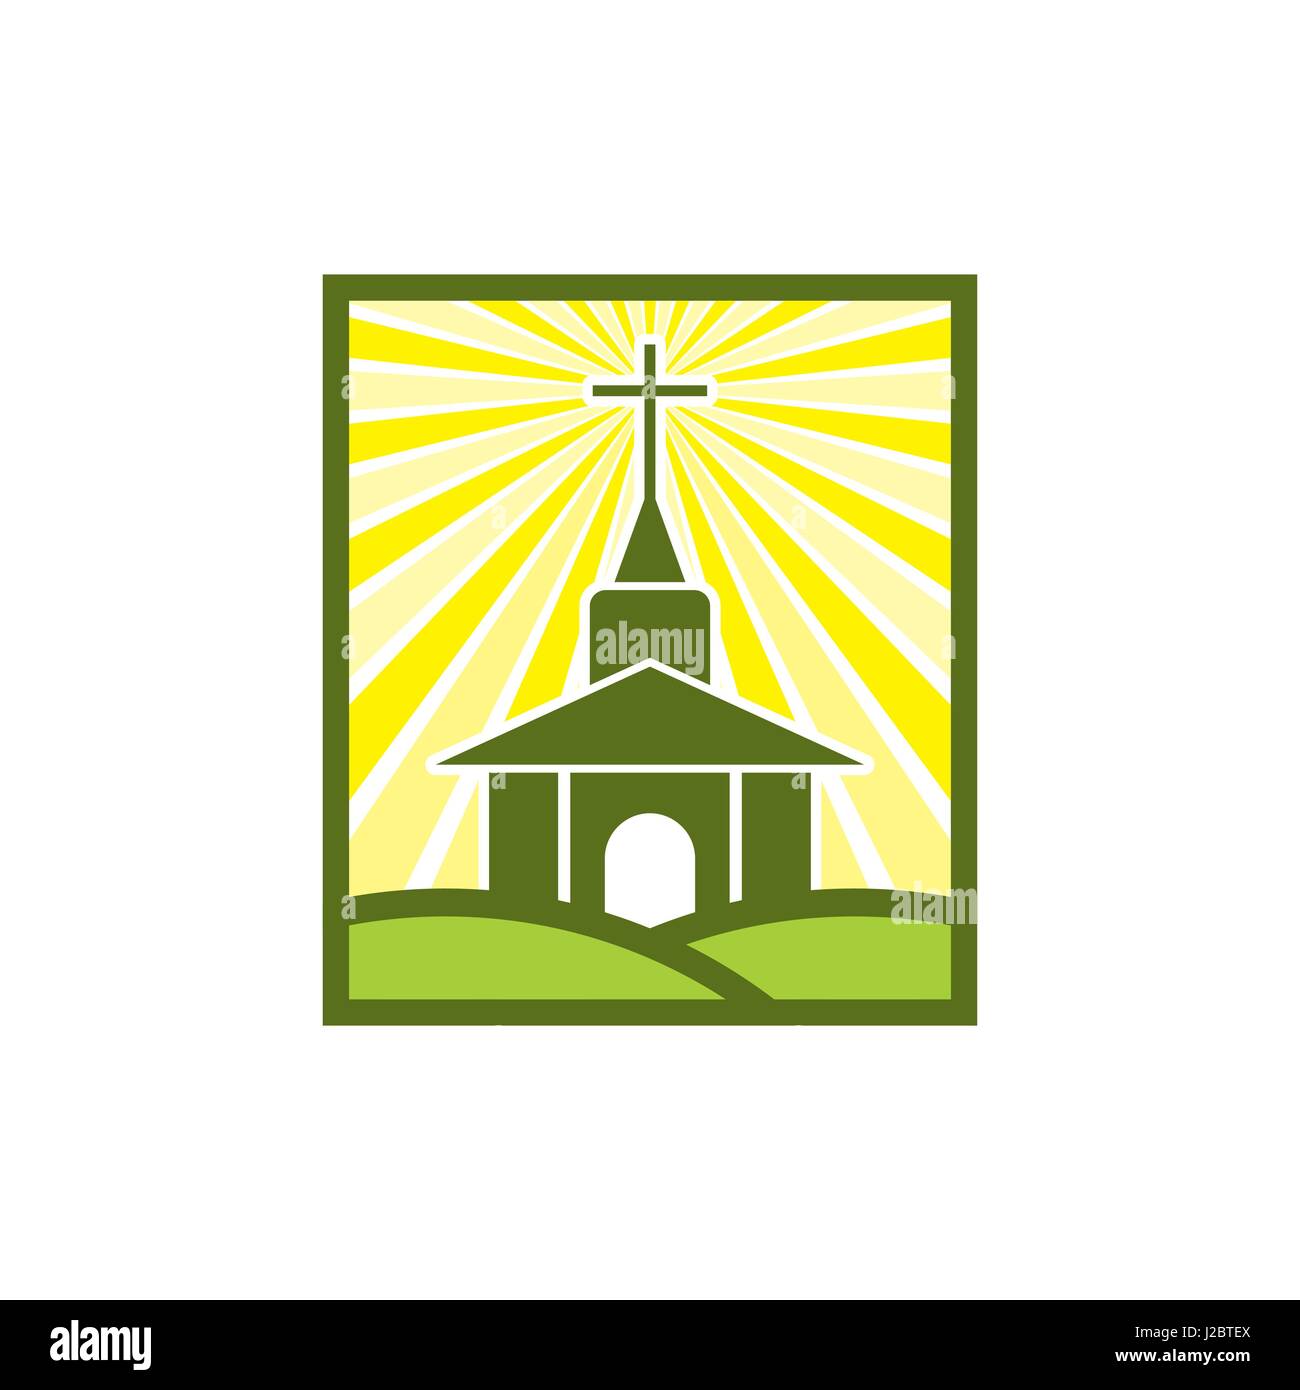 Logo für die Kirche, Ministerium, Mission. Kirche des Herrn Jesus Christus Stock Vektor